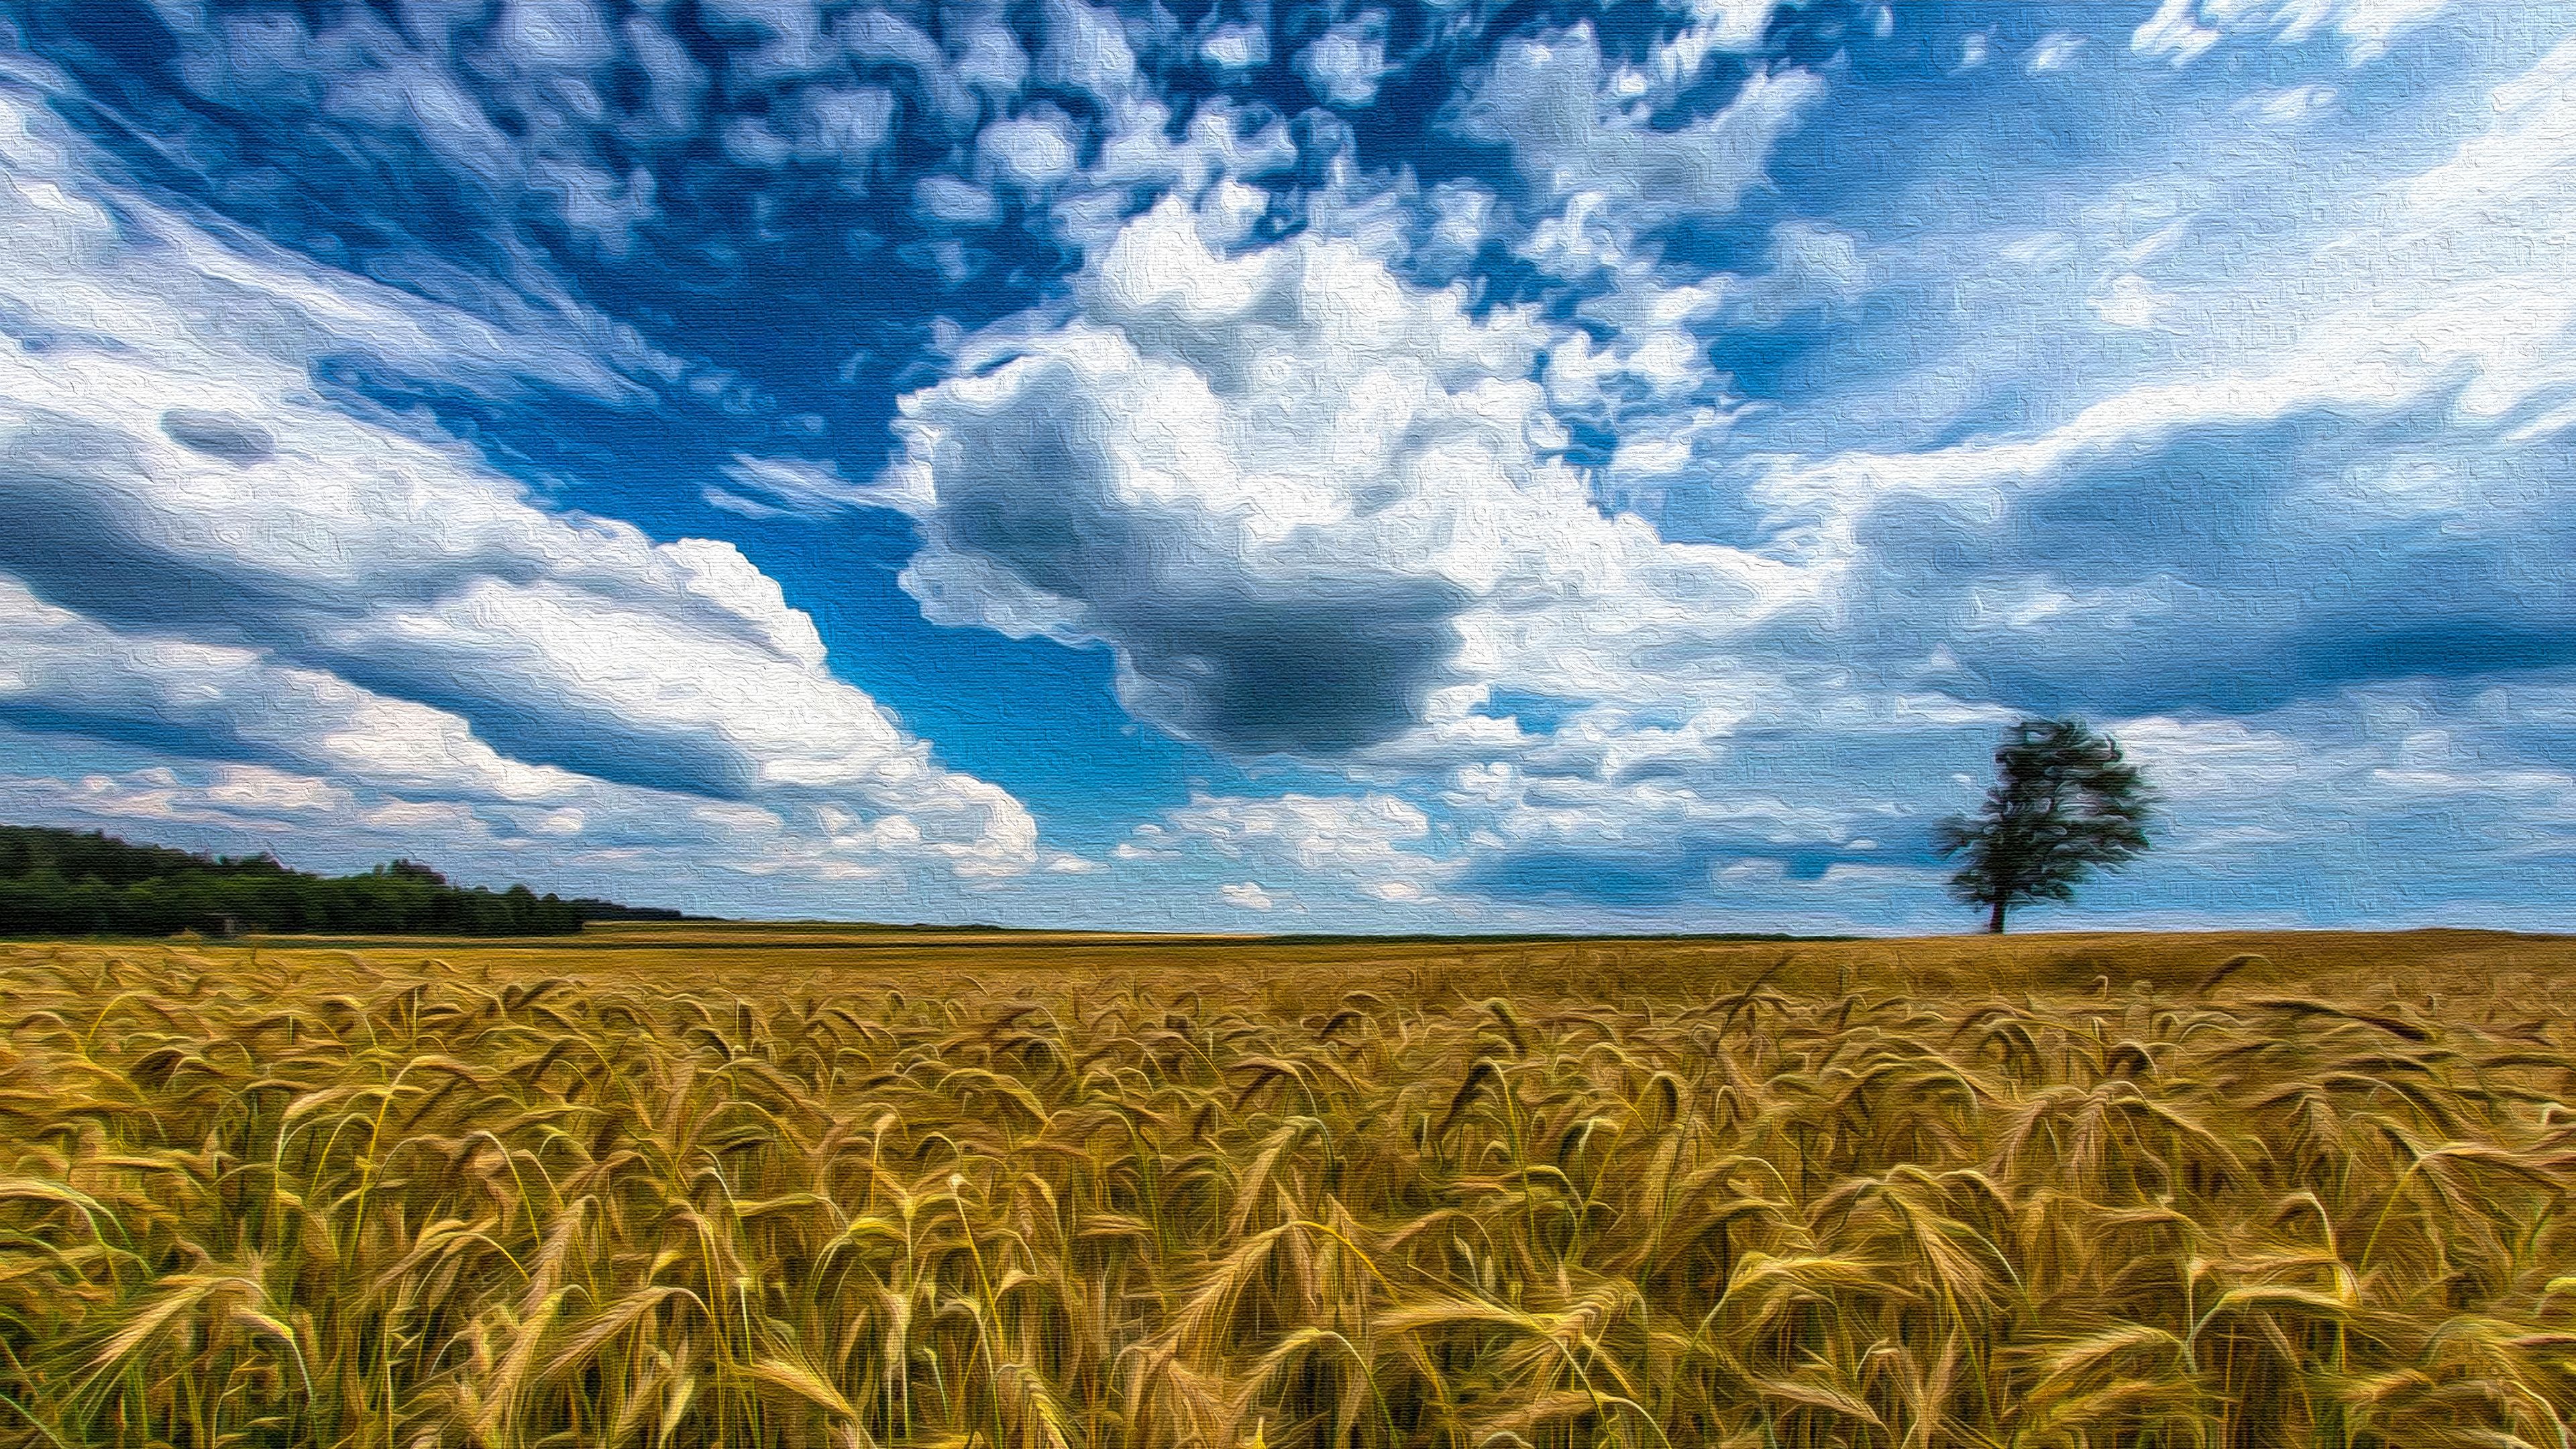 Wheat Field on Canvas 4k Ultra HD Wallpaper. Background